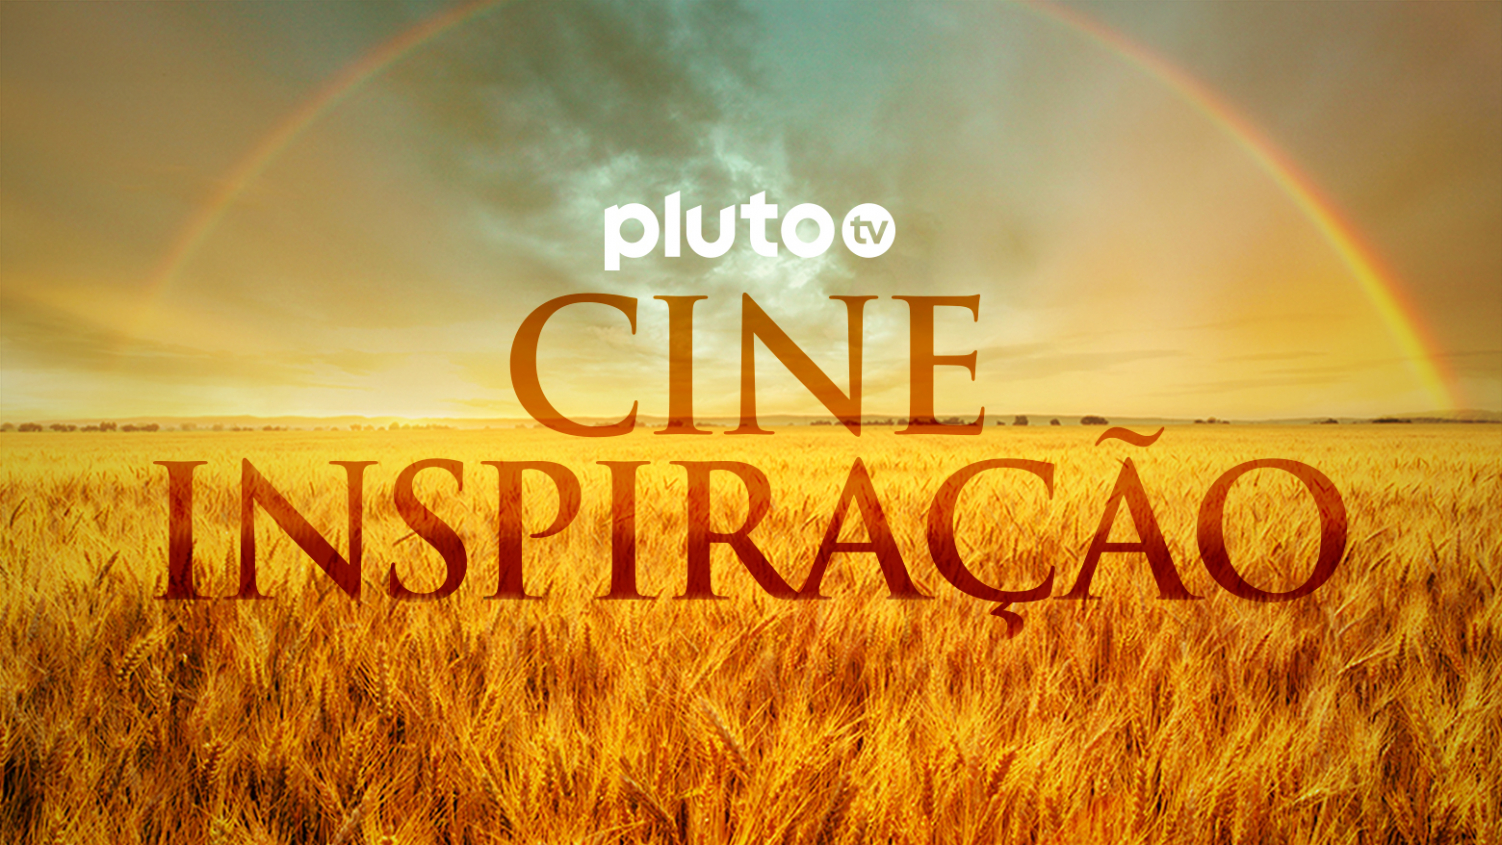 Naruto Shippuden' ESTREIA na plataforma gratuita Pluto TV; Veja a data! -  CinePOP